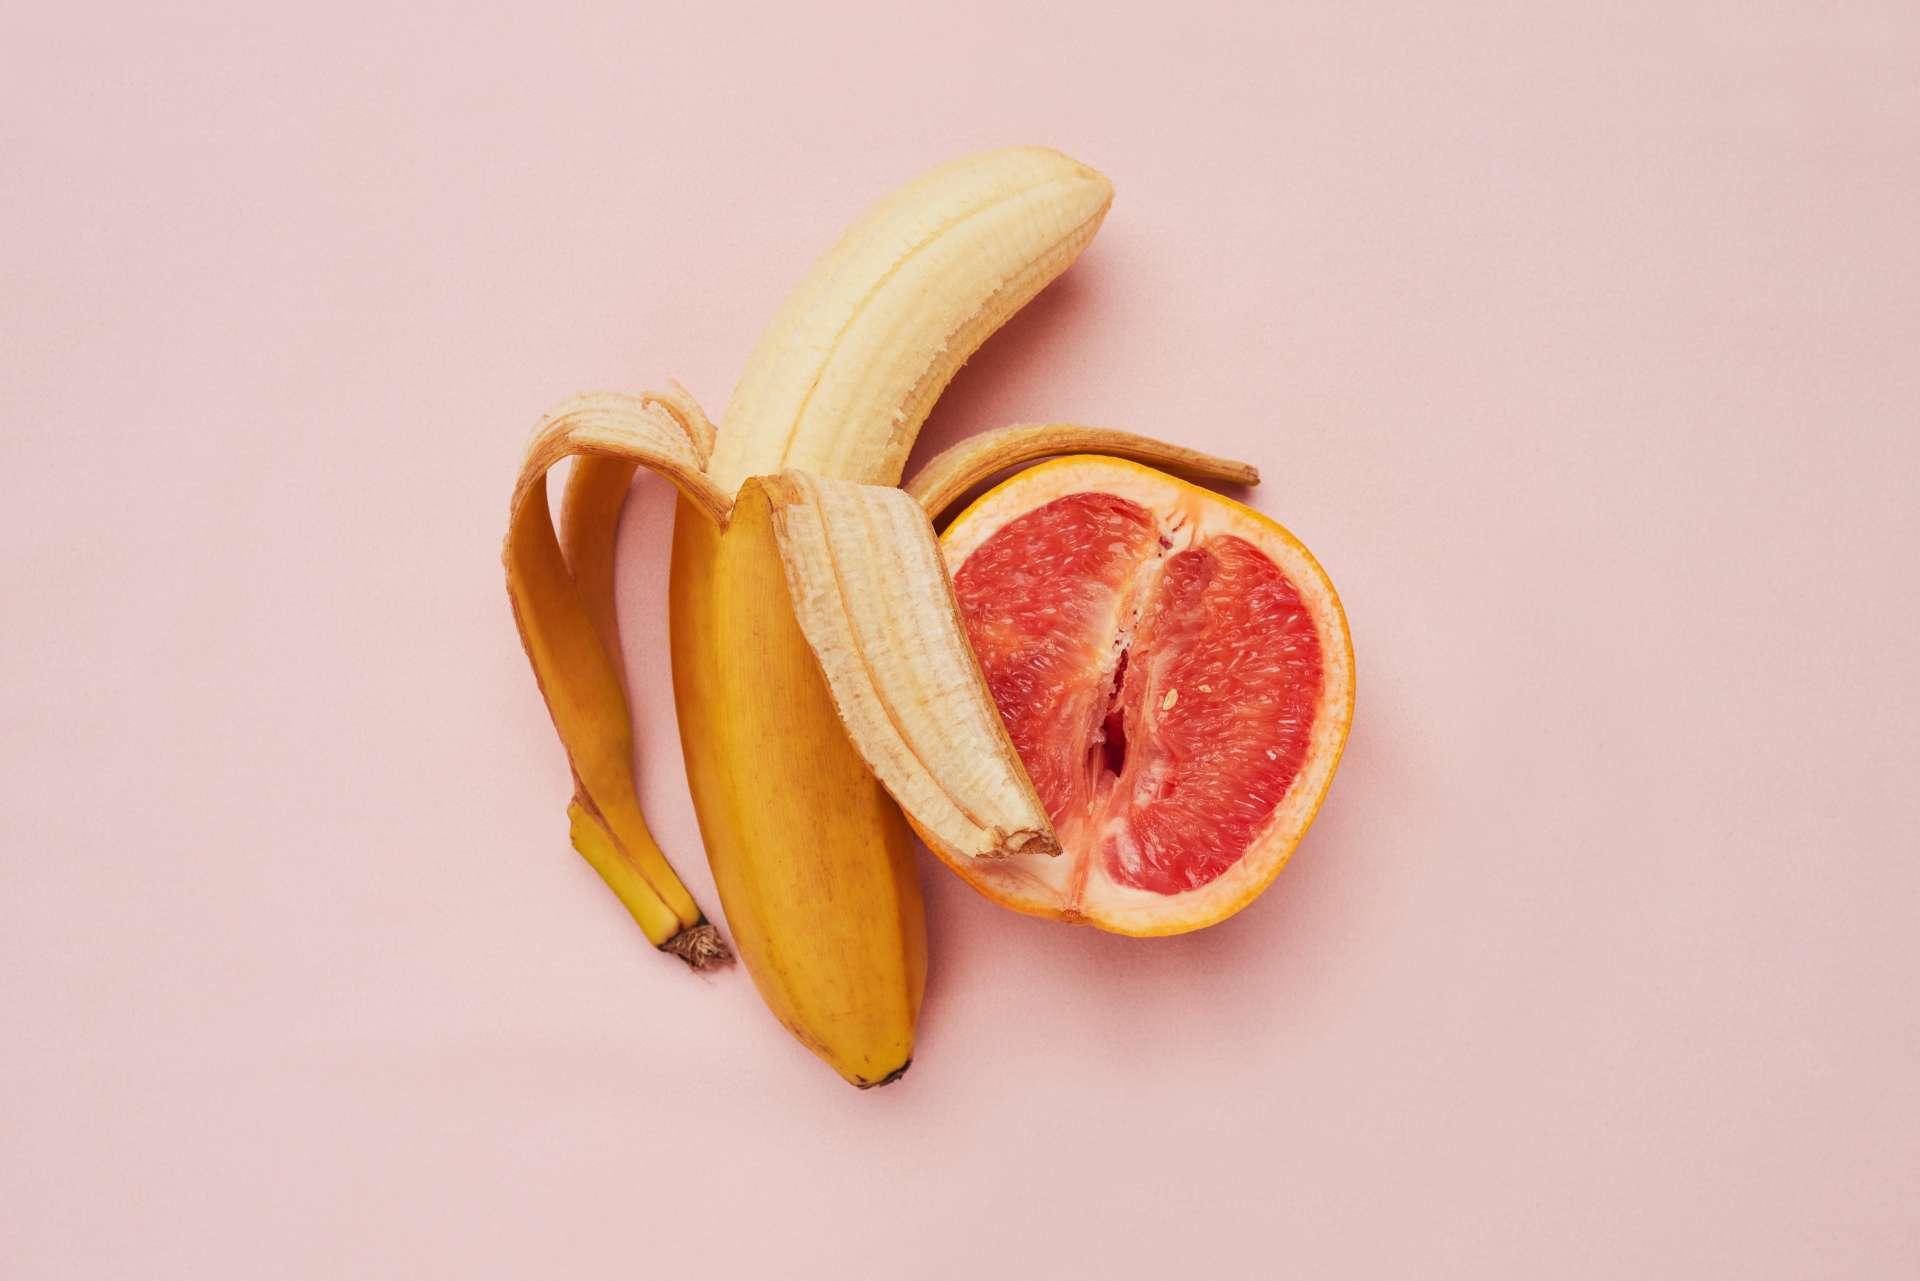 Studioaufnahme einer Banane und einer Grapefruit in einer suggestiven Position vor einem rosa Hintergrund